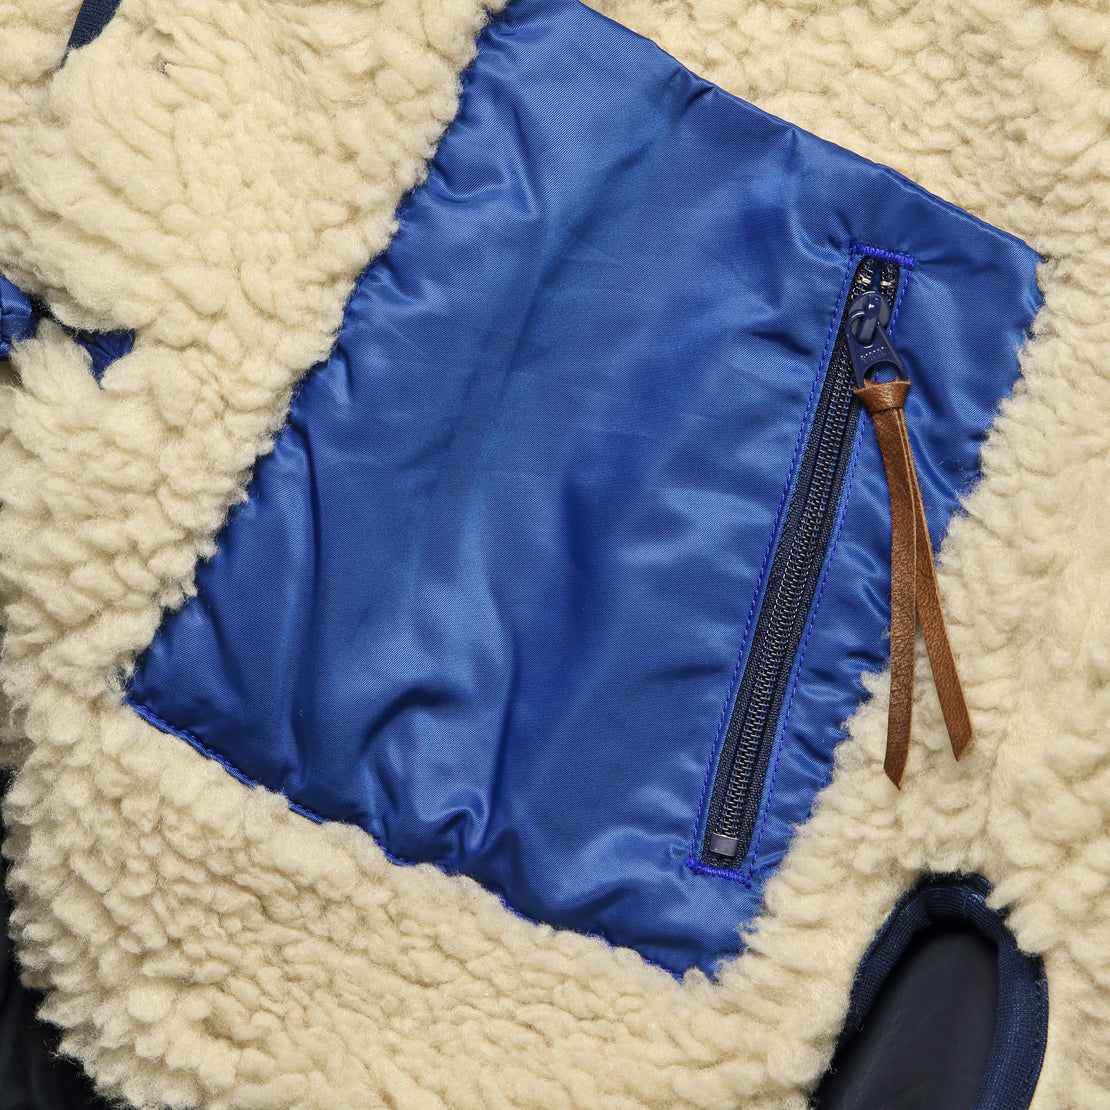 Makani Boa Fleece Jacket - Ecru - Kapital - STAG Provisions - Outerwear - Coat / Jacket